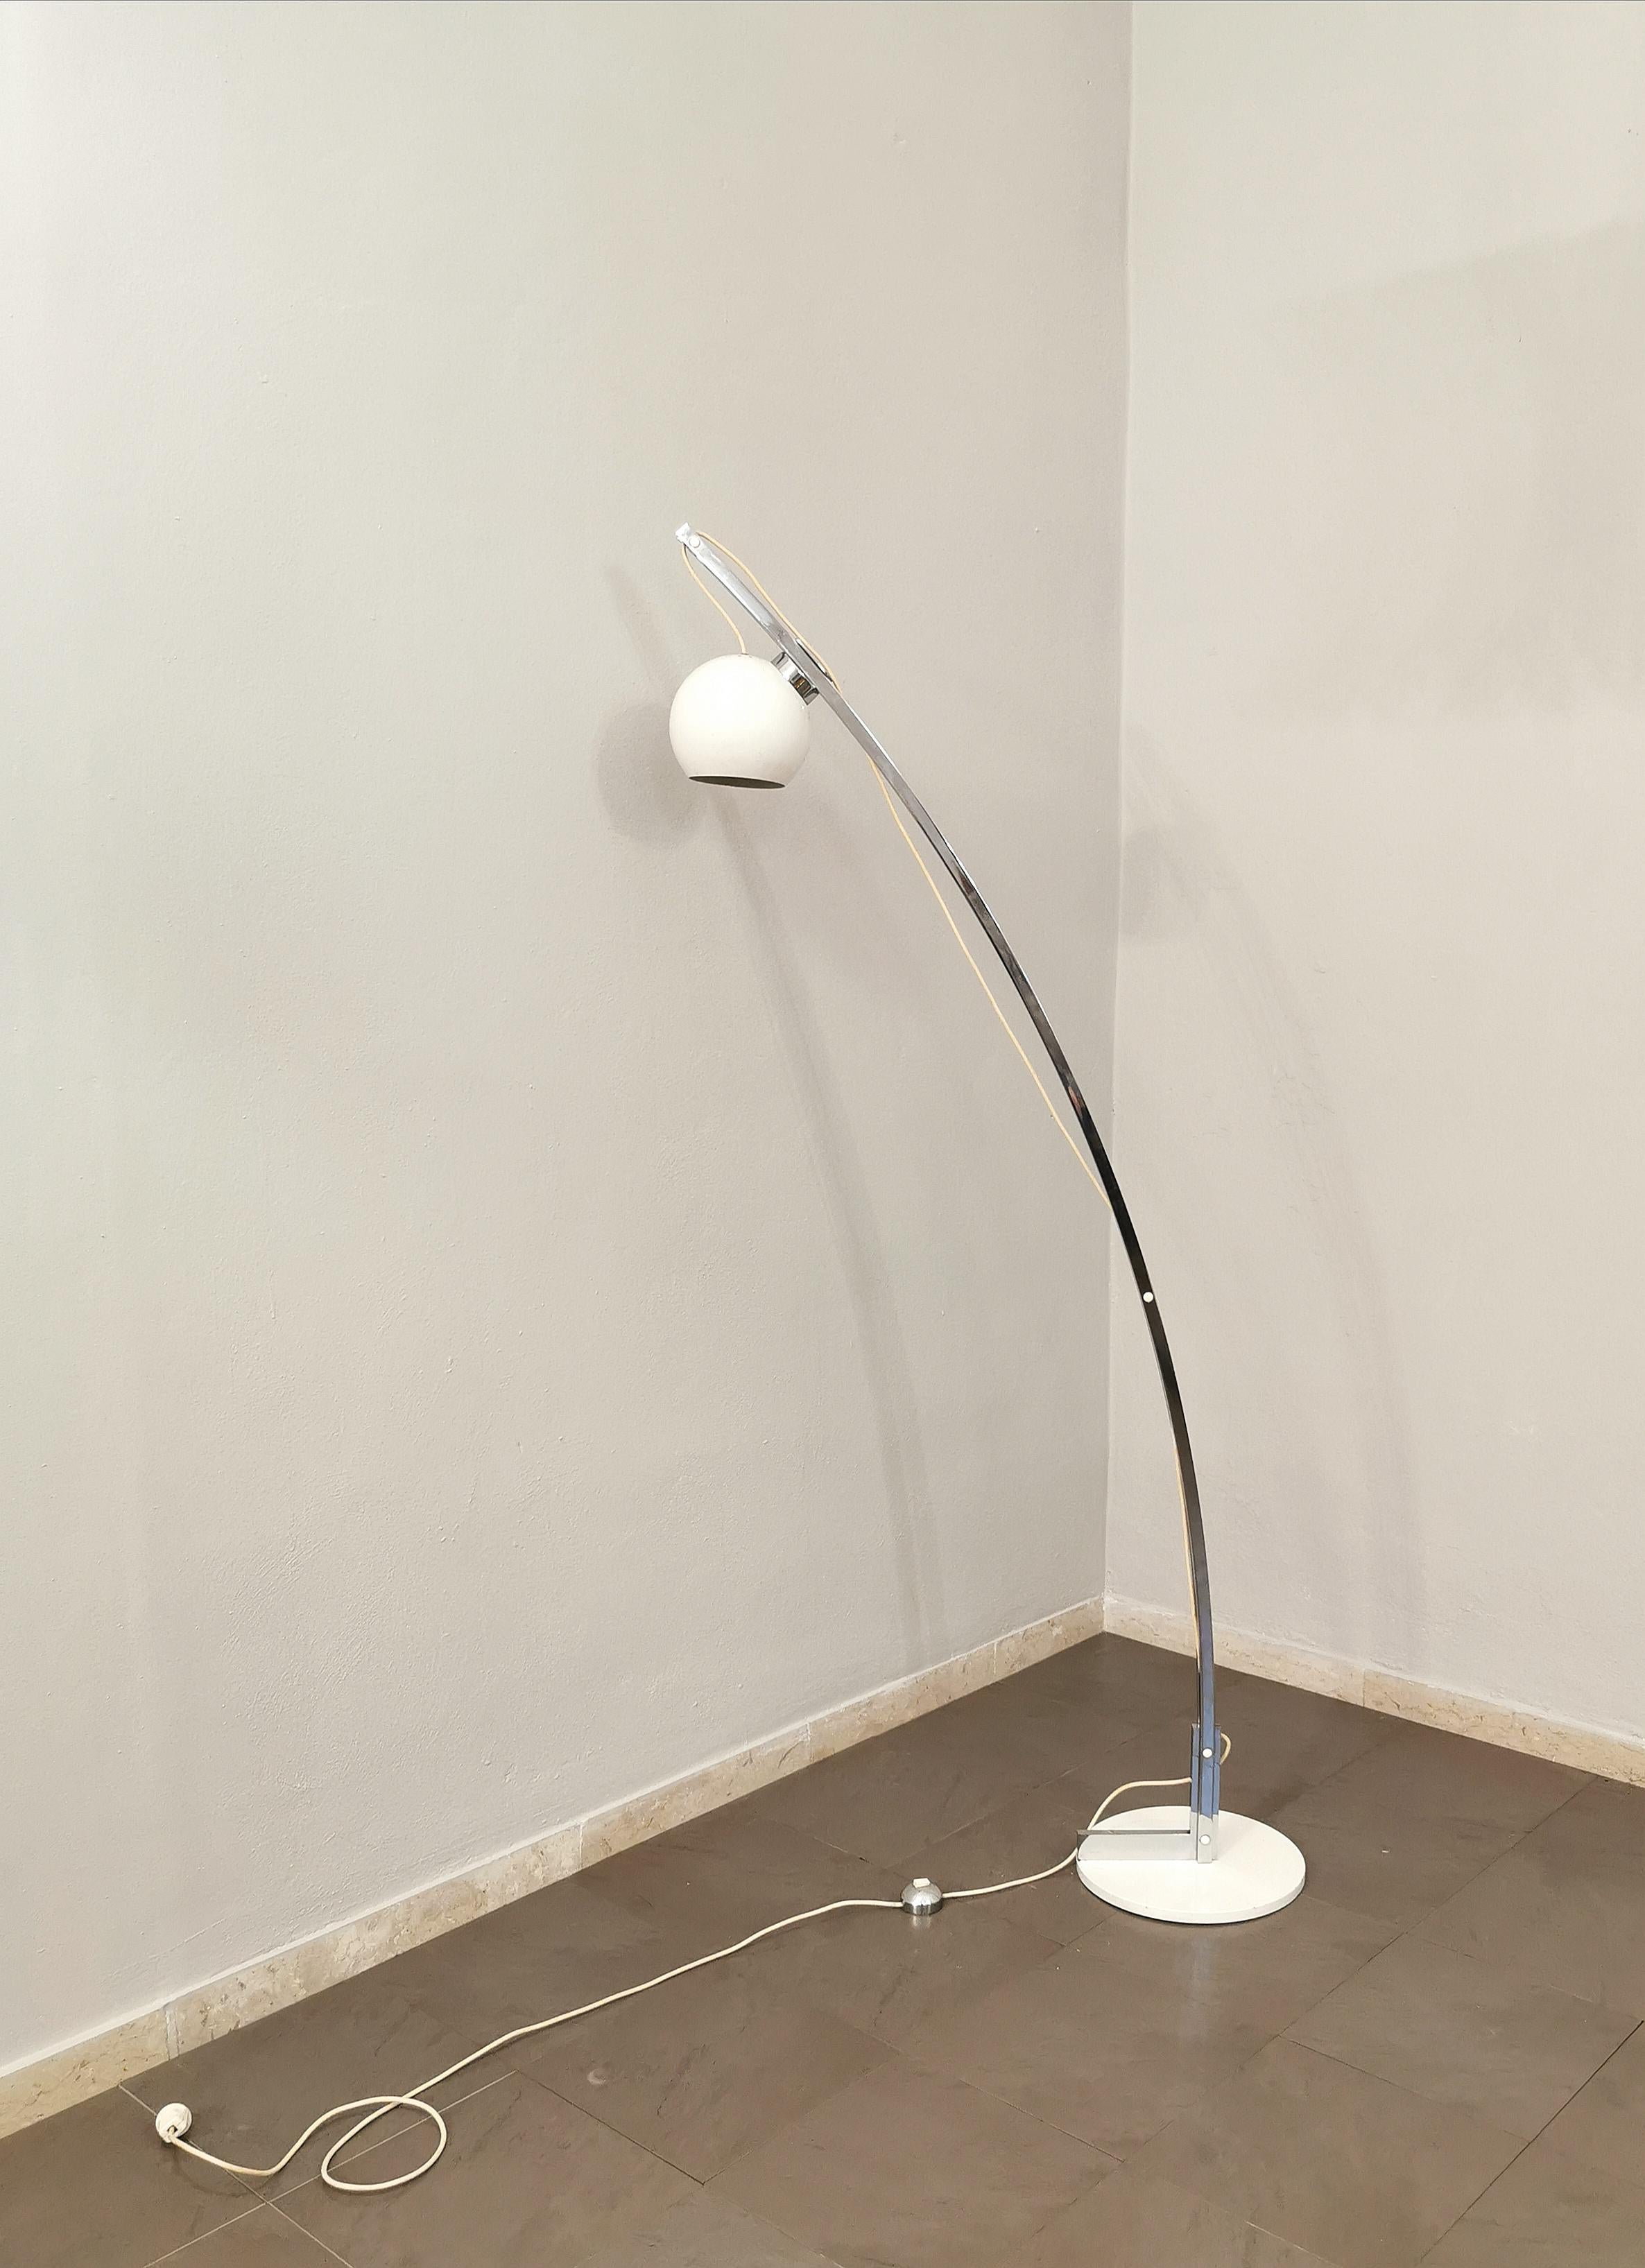 Midcentury Floor Lamp Reggiani Style Chromed Enameled Metal Italian Design 1970s For Sale 1